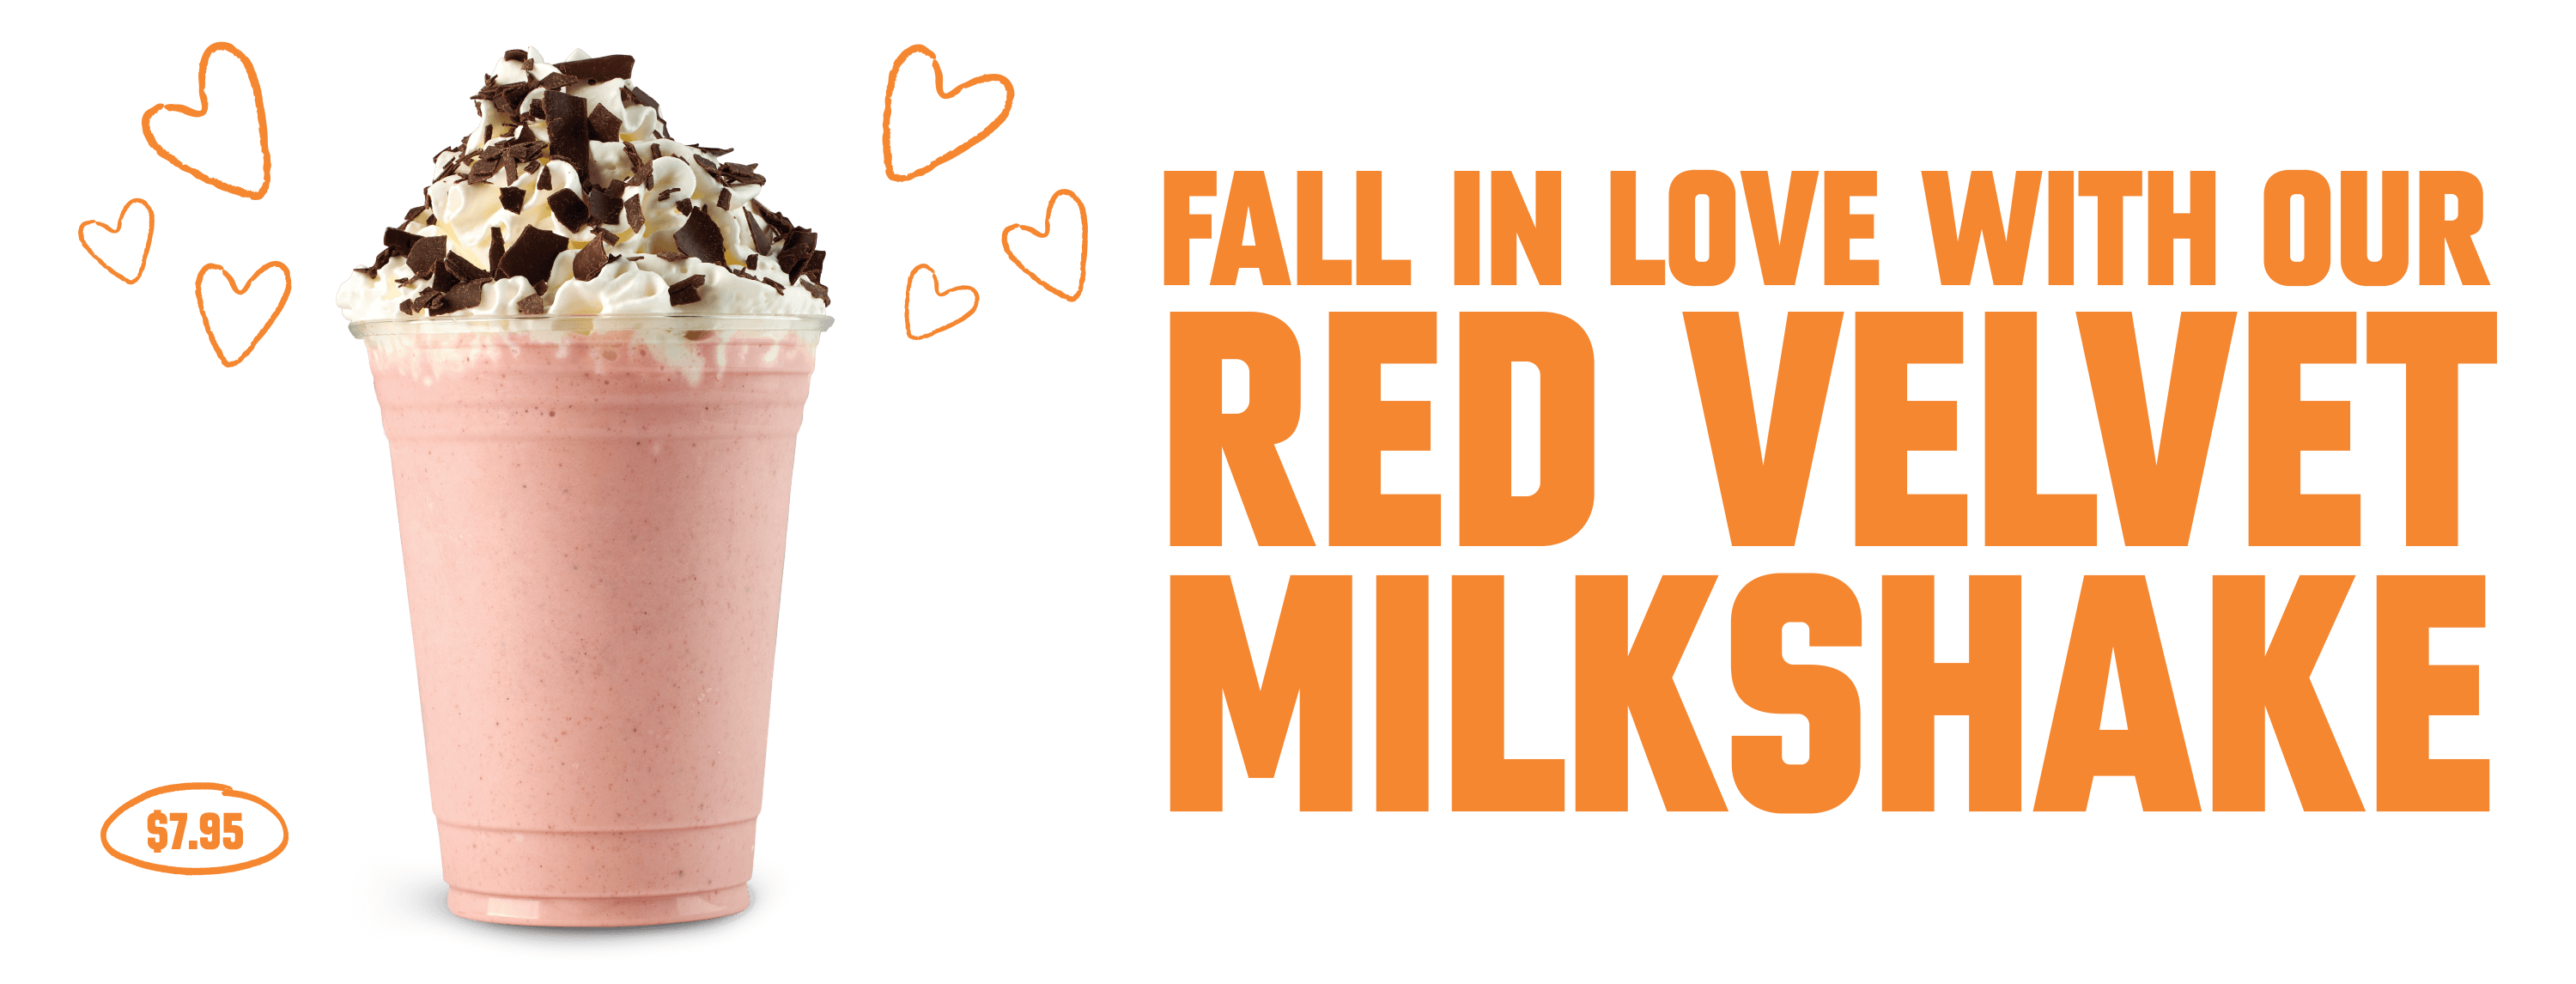 Red Velvet Milkshake - Desktop Version